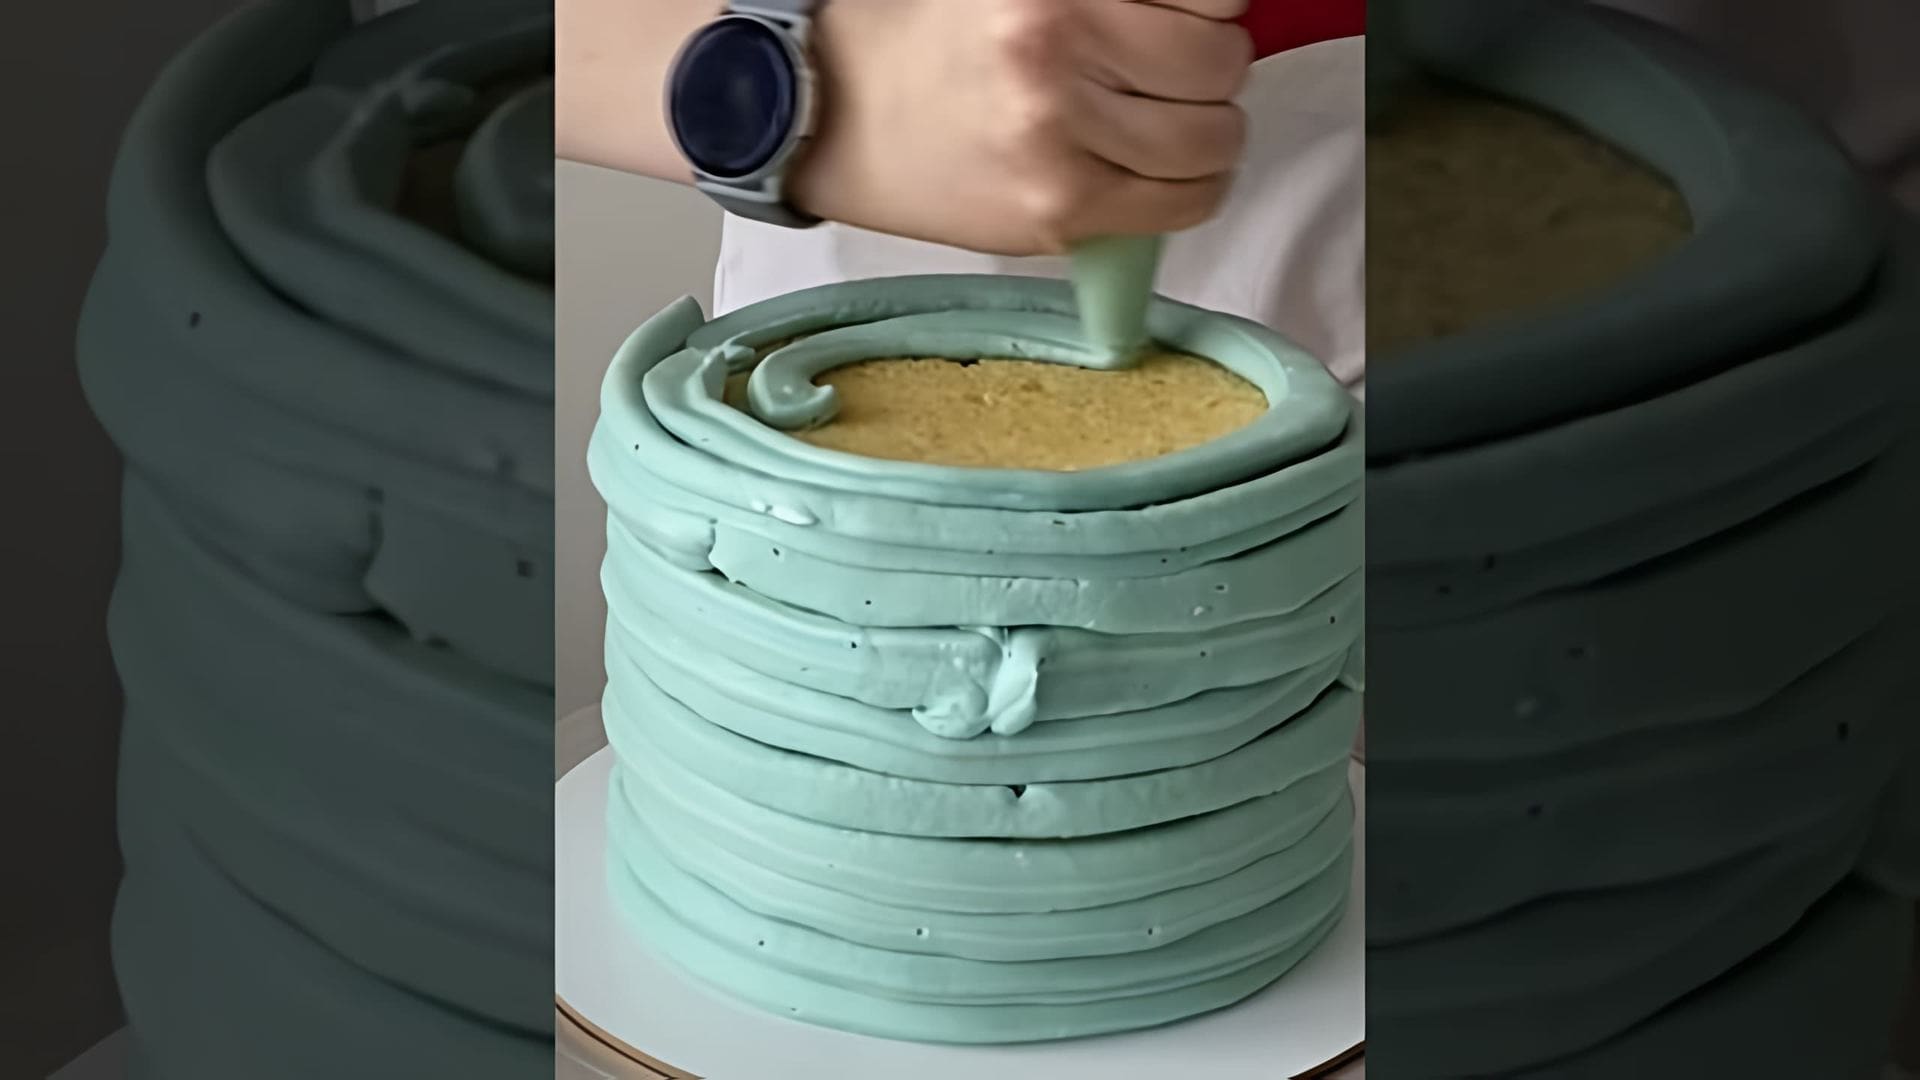 В этом видео девушка рассказывает о том, как она готовила торт на первый день рождения своего сына